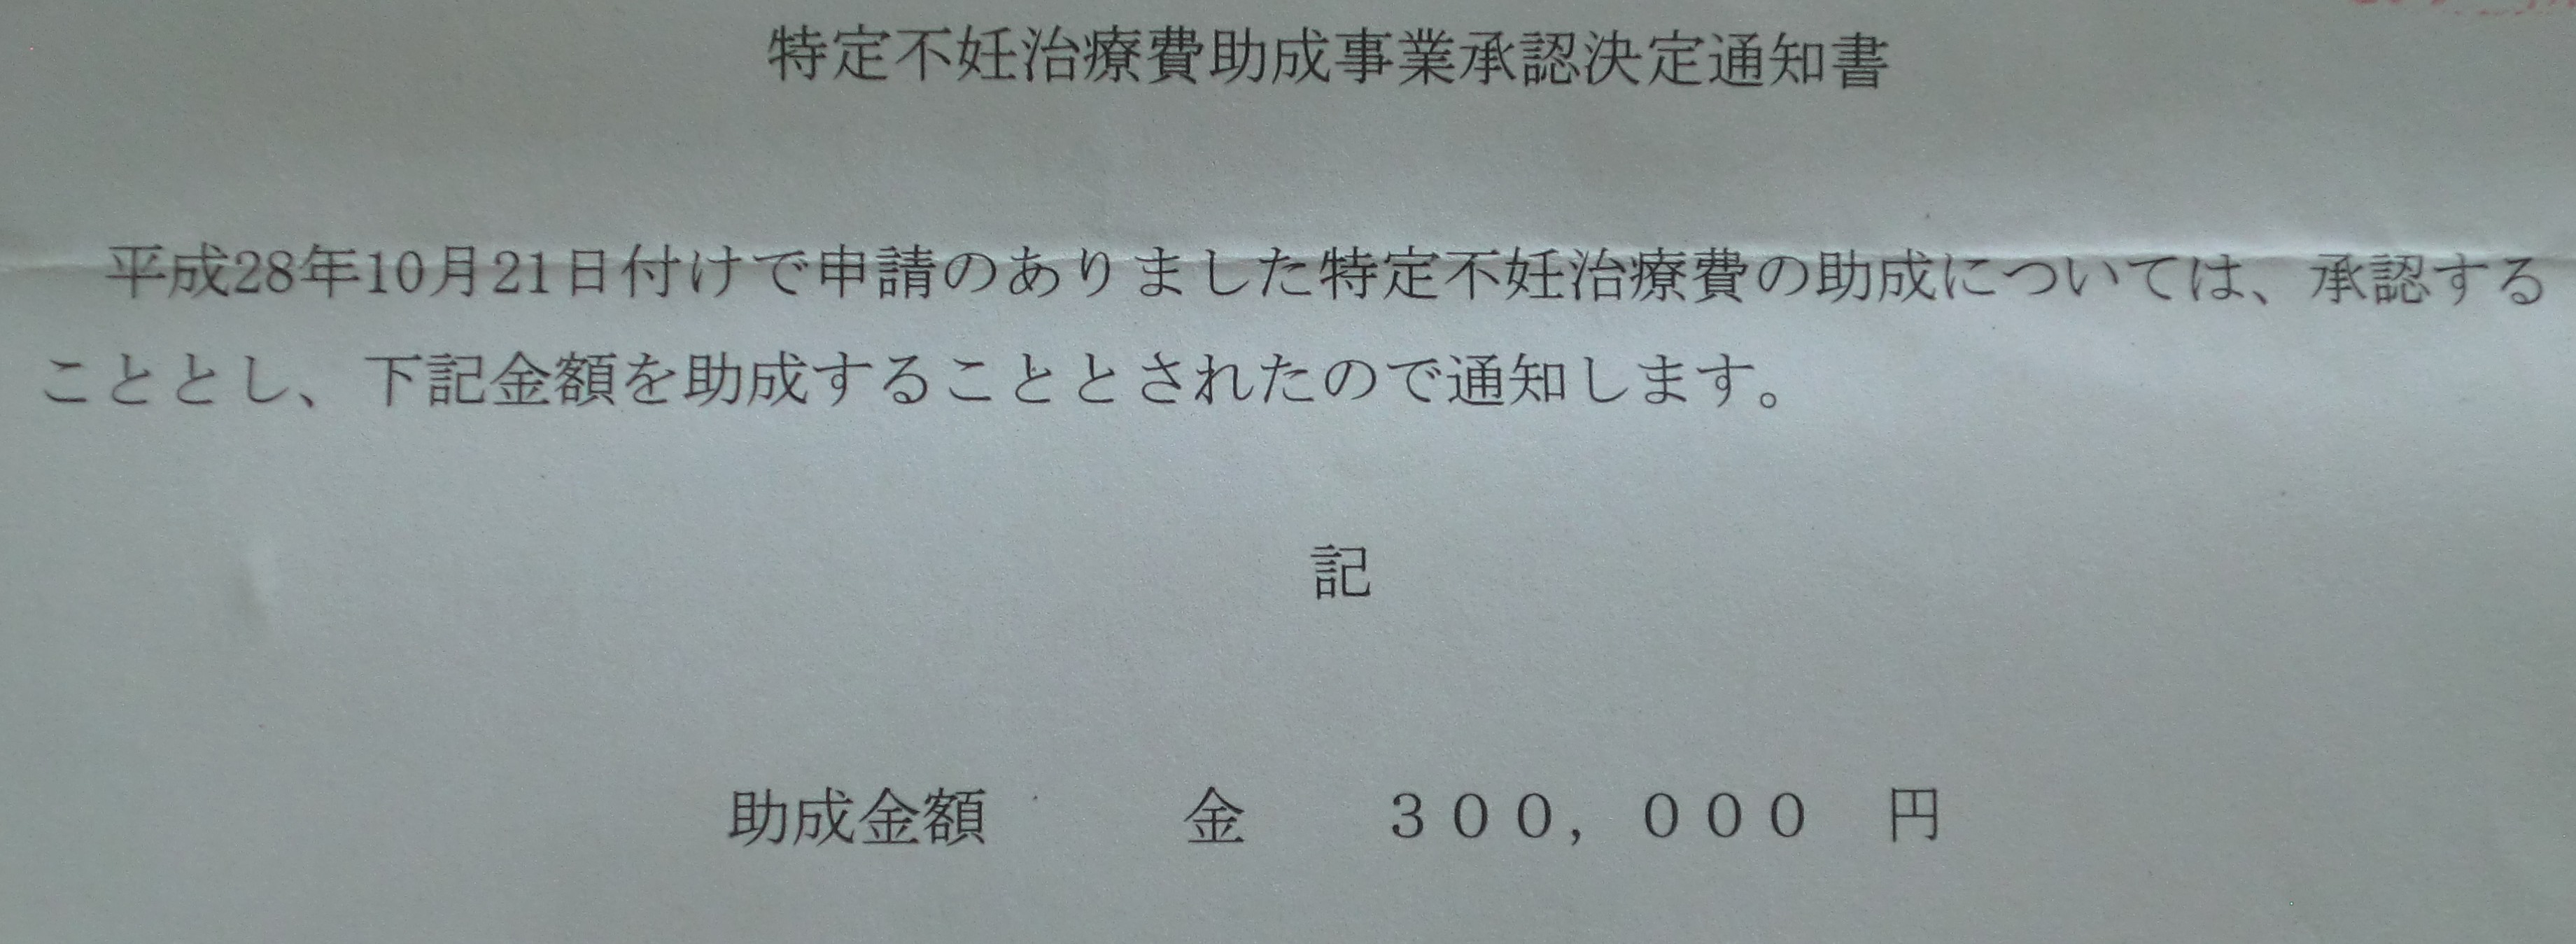 30万円助成された！特定不妊治療助成金を申請しました。